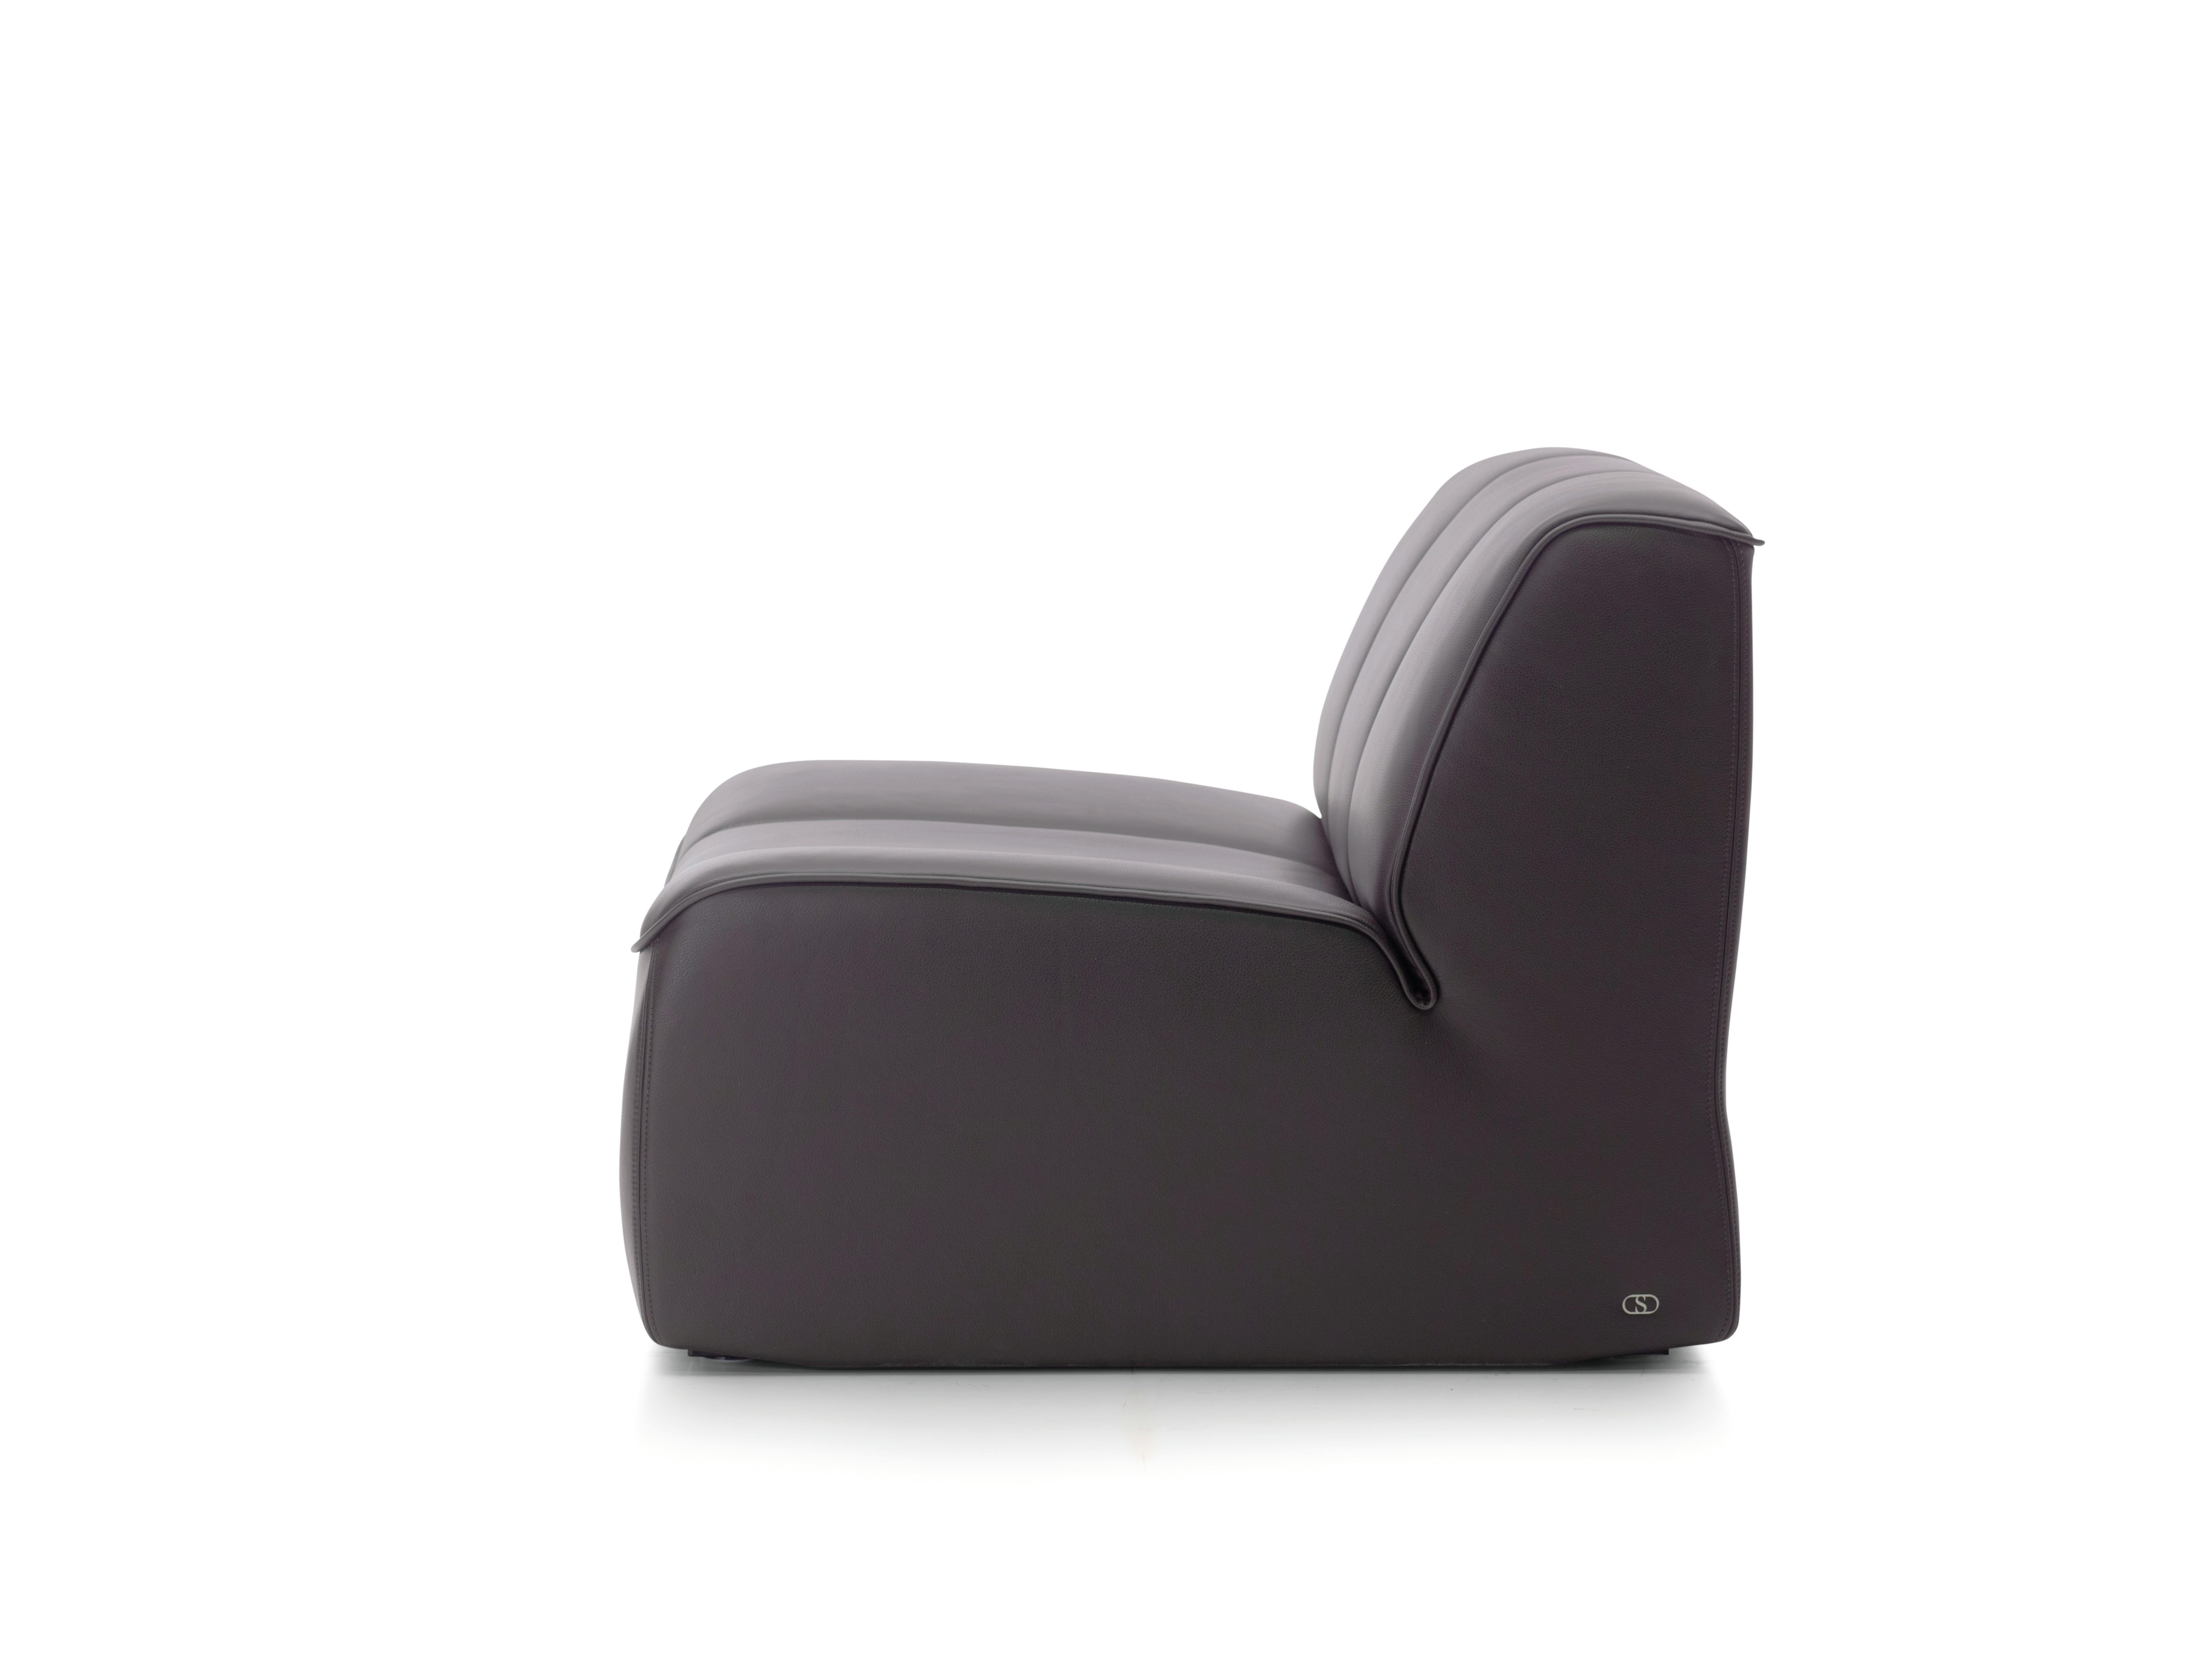 Qu'il s'agisse d'un fauteuil ou d'un canapé, la position statique du DS-910 démontre la haute qualité de l'artisanat suisse. Qu'il s'agisse d'une seule pièce ou d'un groupe de sièges, tous les composants confèrent une sensation organique dans